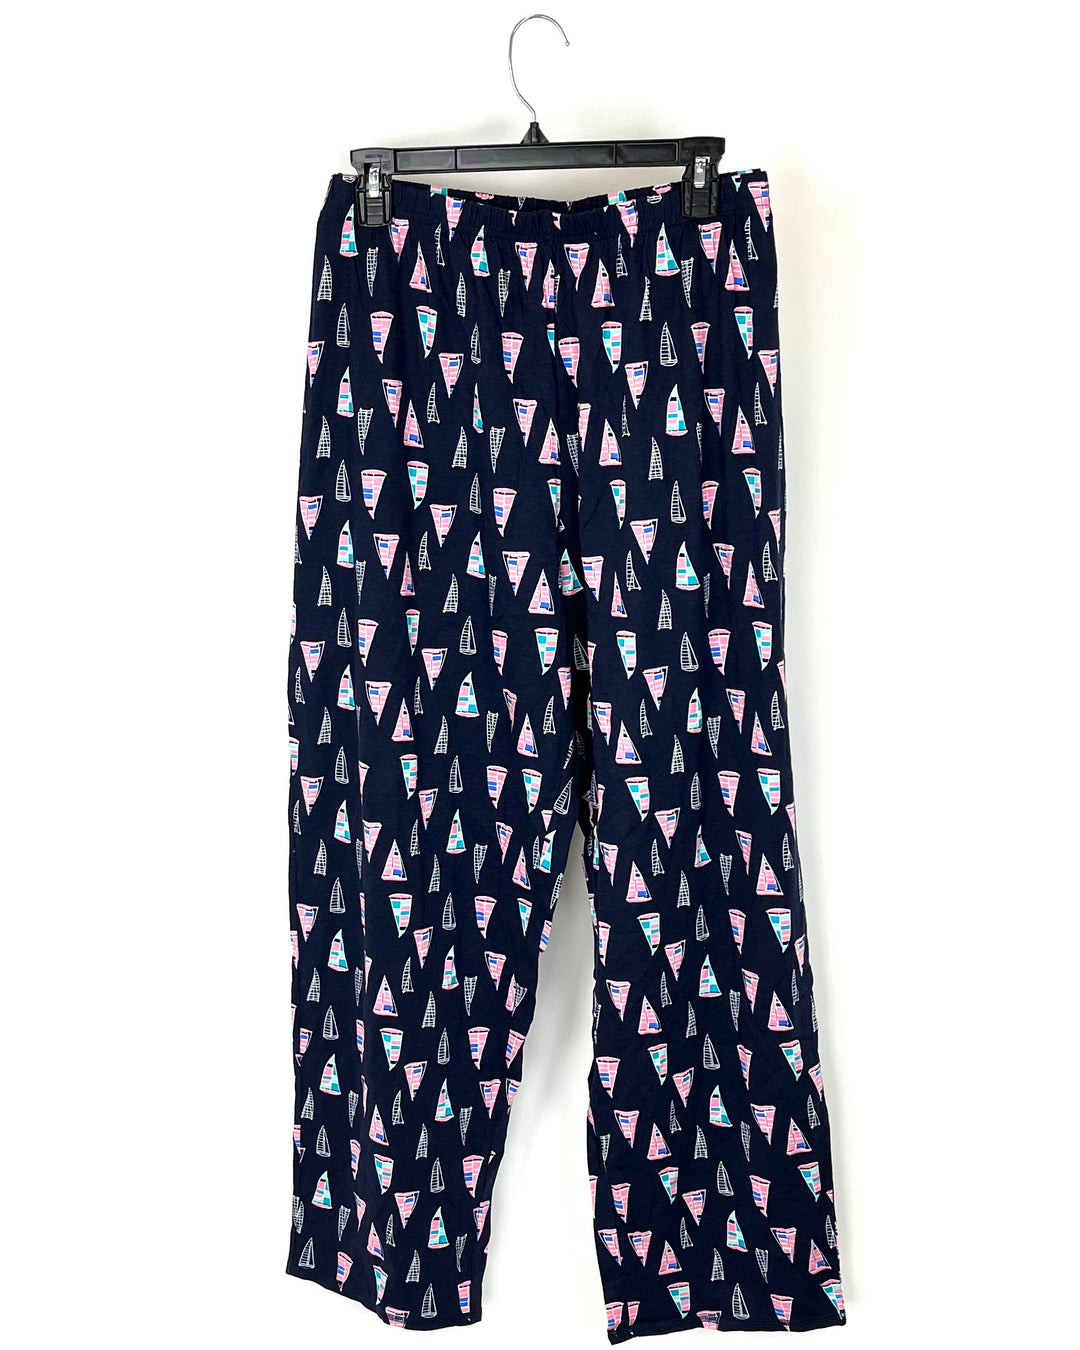 Sailboat Pajama Pants - Small